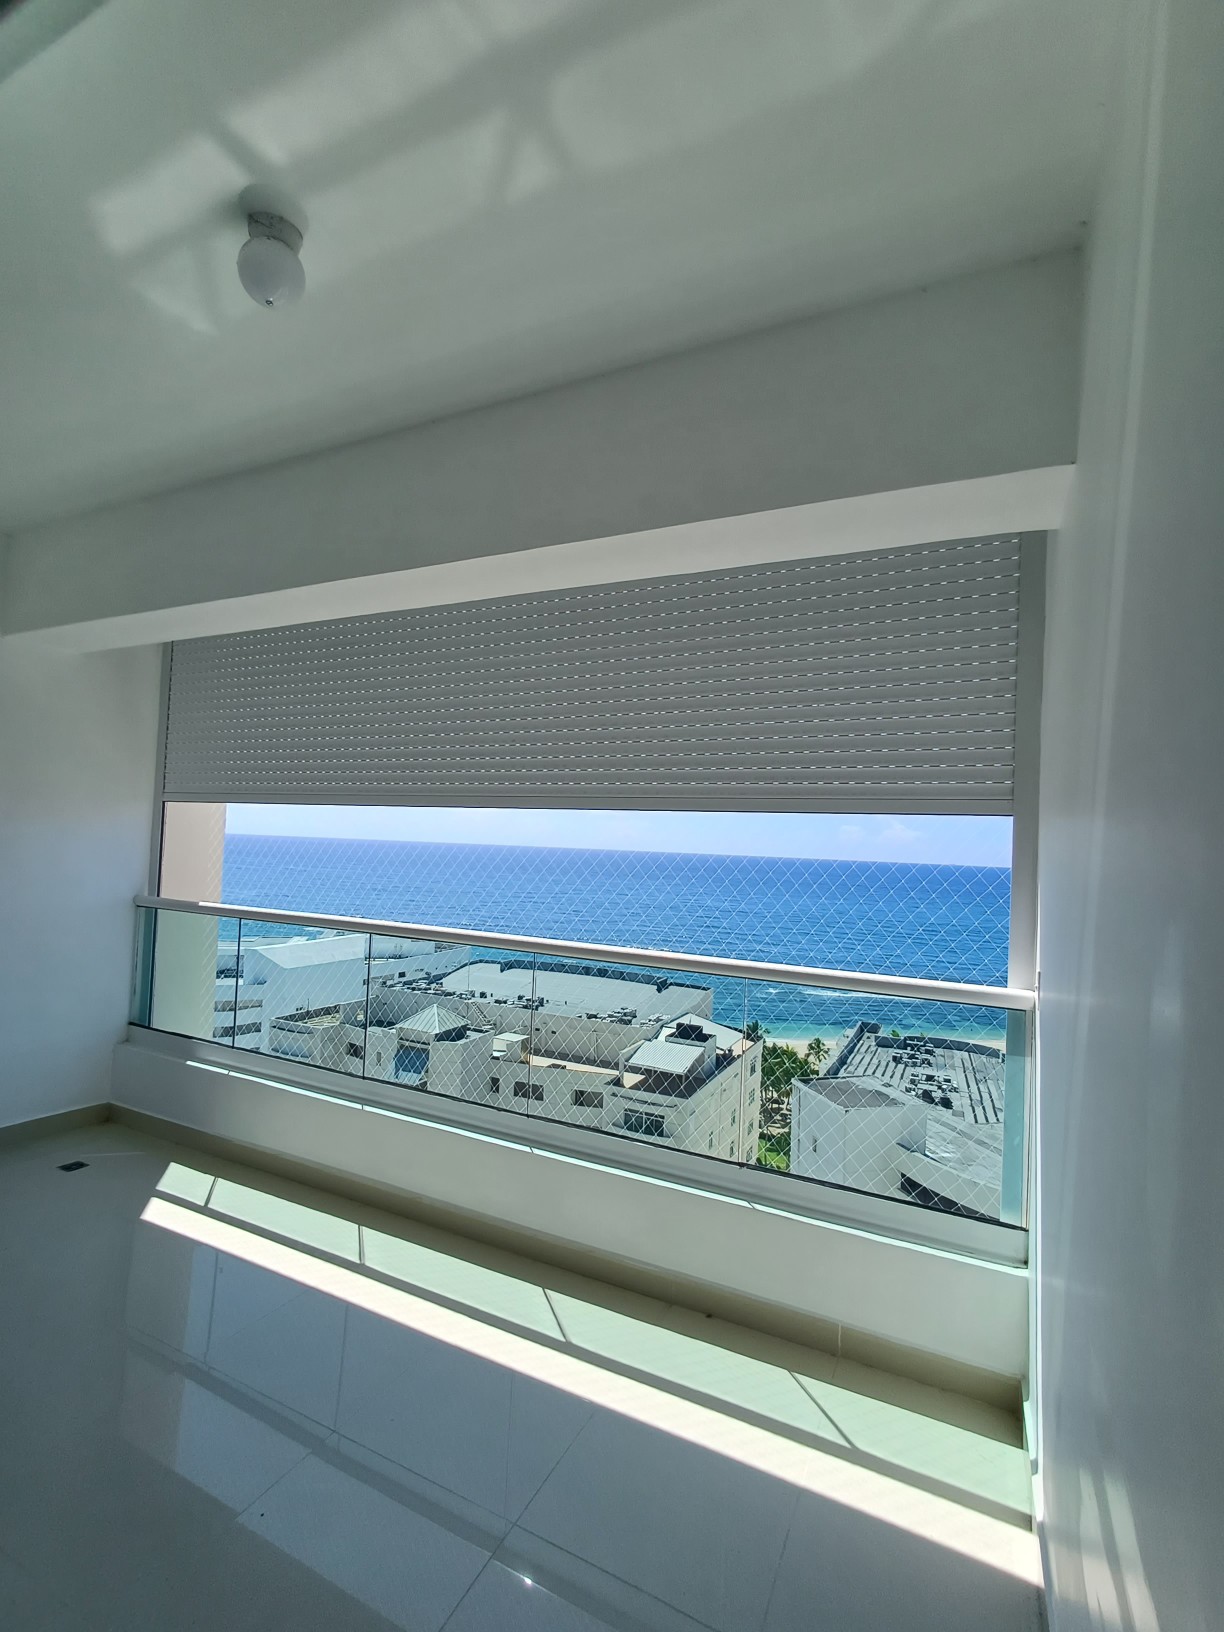 apartamentos - Vendo en Juan Dolio, hermoso apartamento con vista 360 del mar con línea blanca